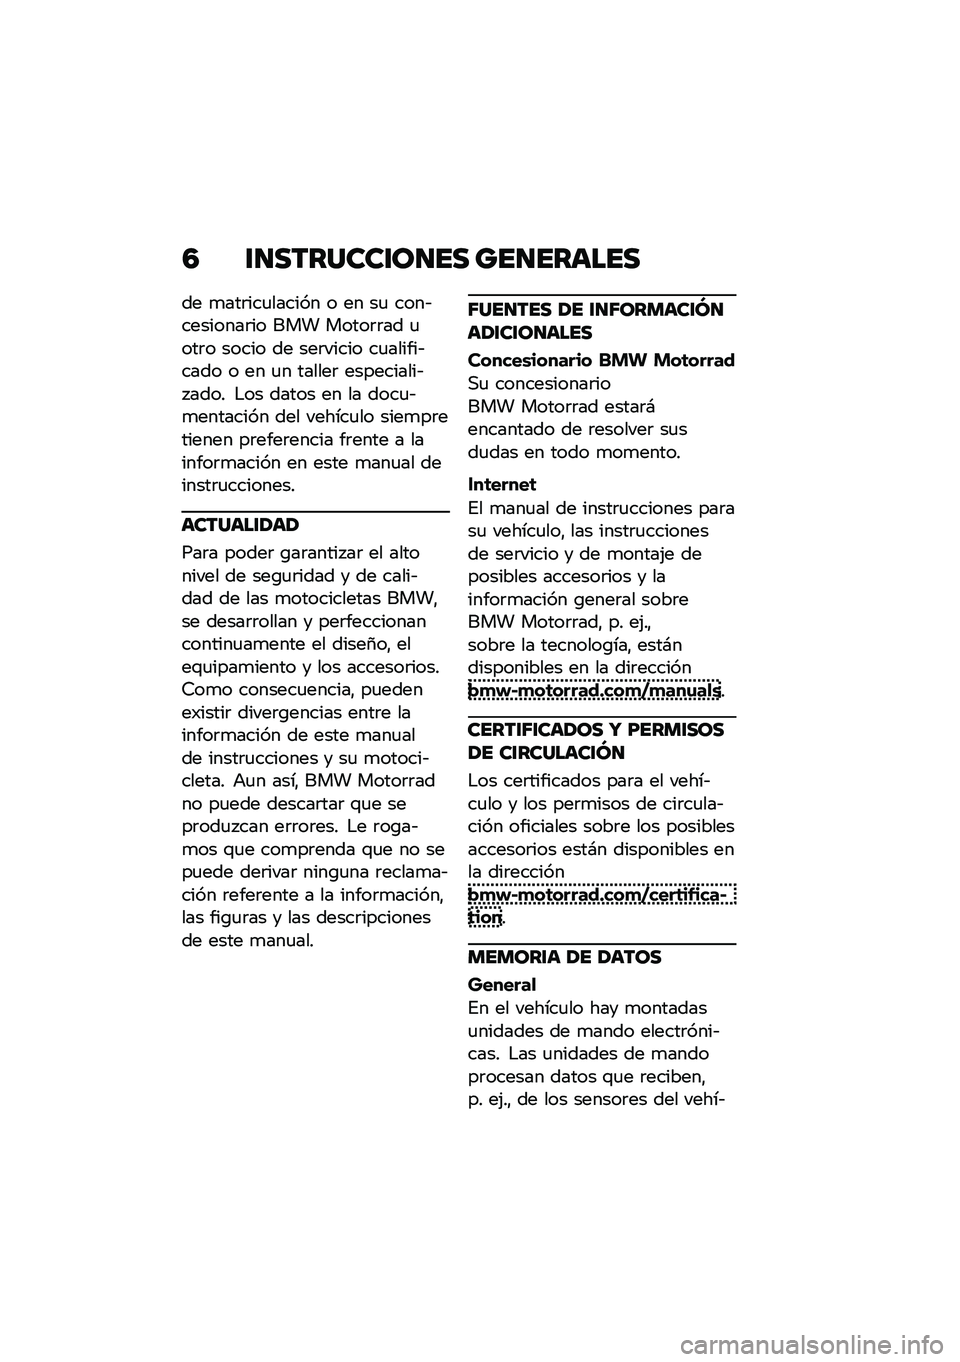 BMW MOTORRAD M 1000 RR 2021  Manual de instrucciones (in Spanish) �4 �\f�
�������\f��
�� ���
������
�� �
���	���
������ � �� ��
 ����&��������	�� ��� �����	�	�� �
���	� ����� �� ���	����� ��
��